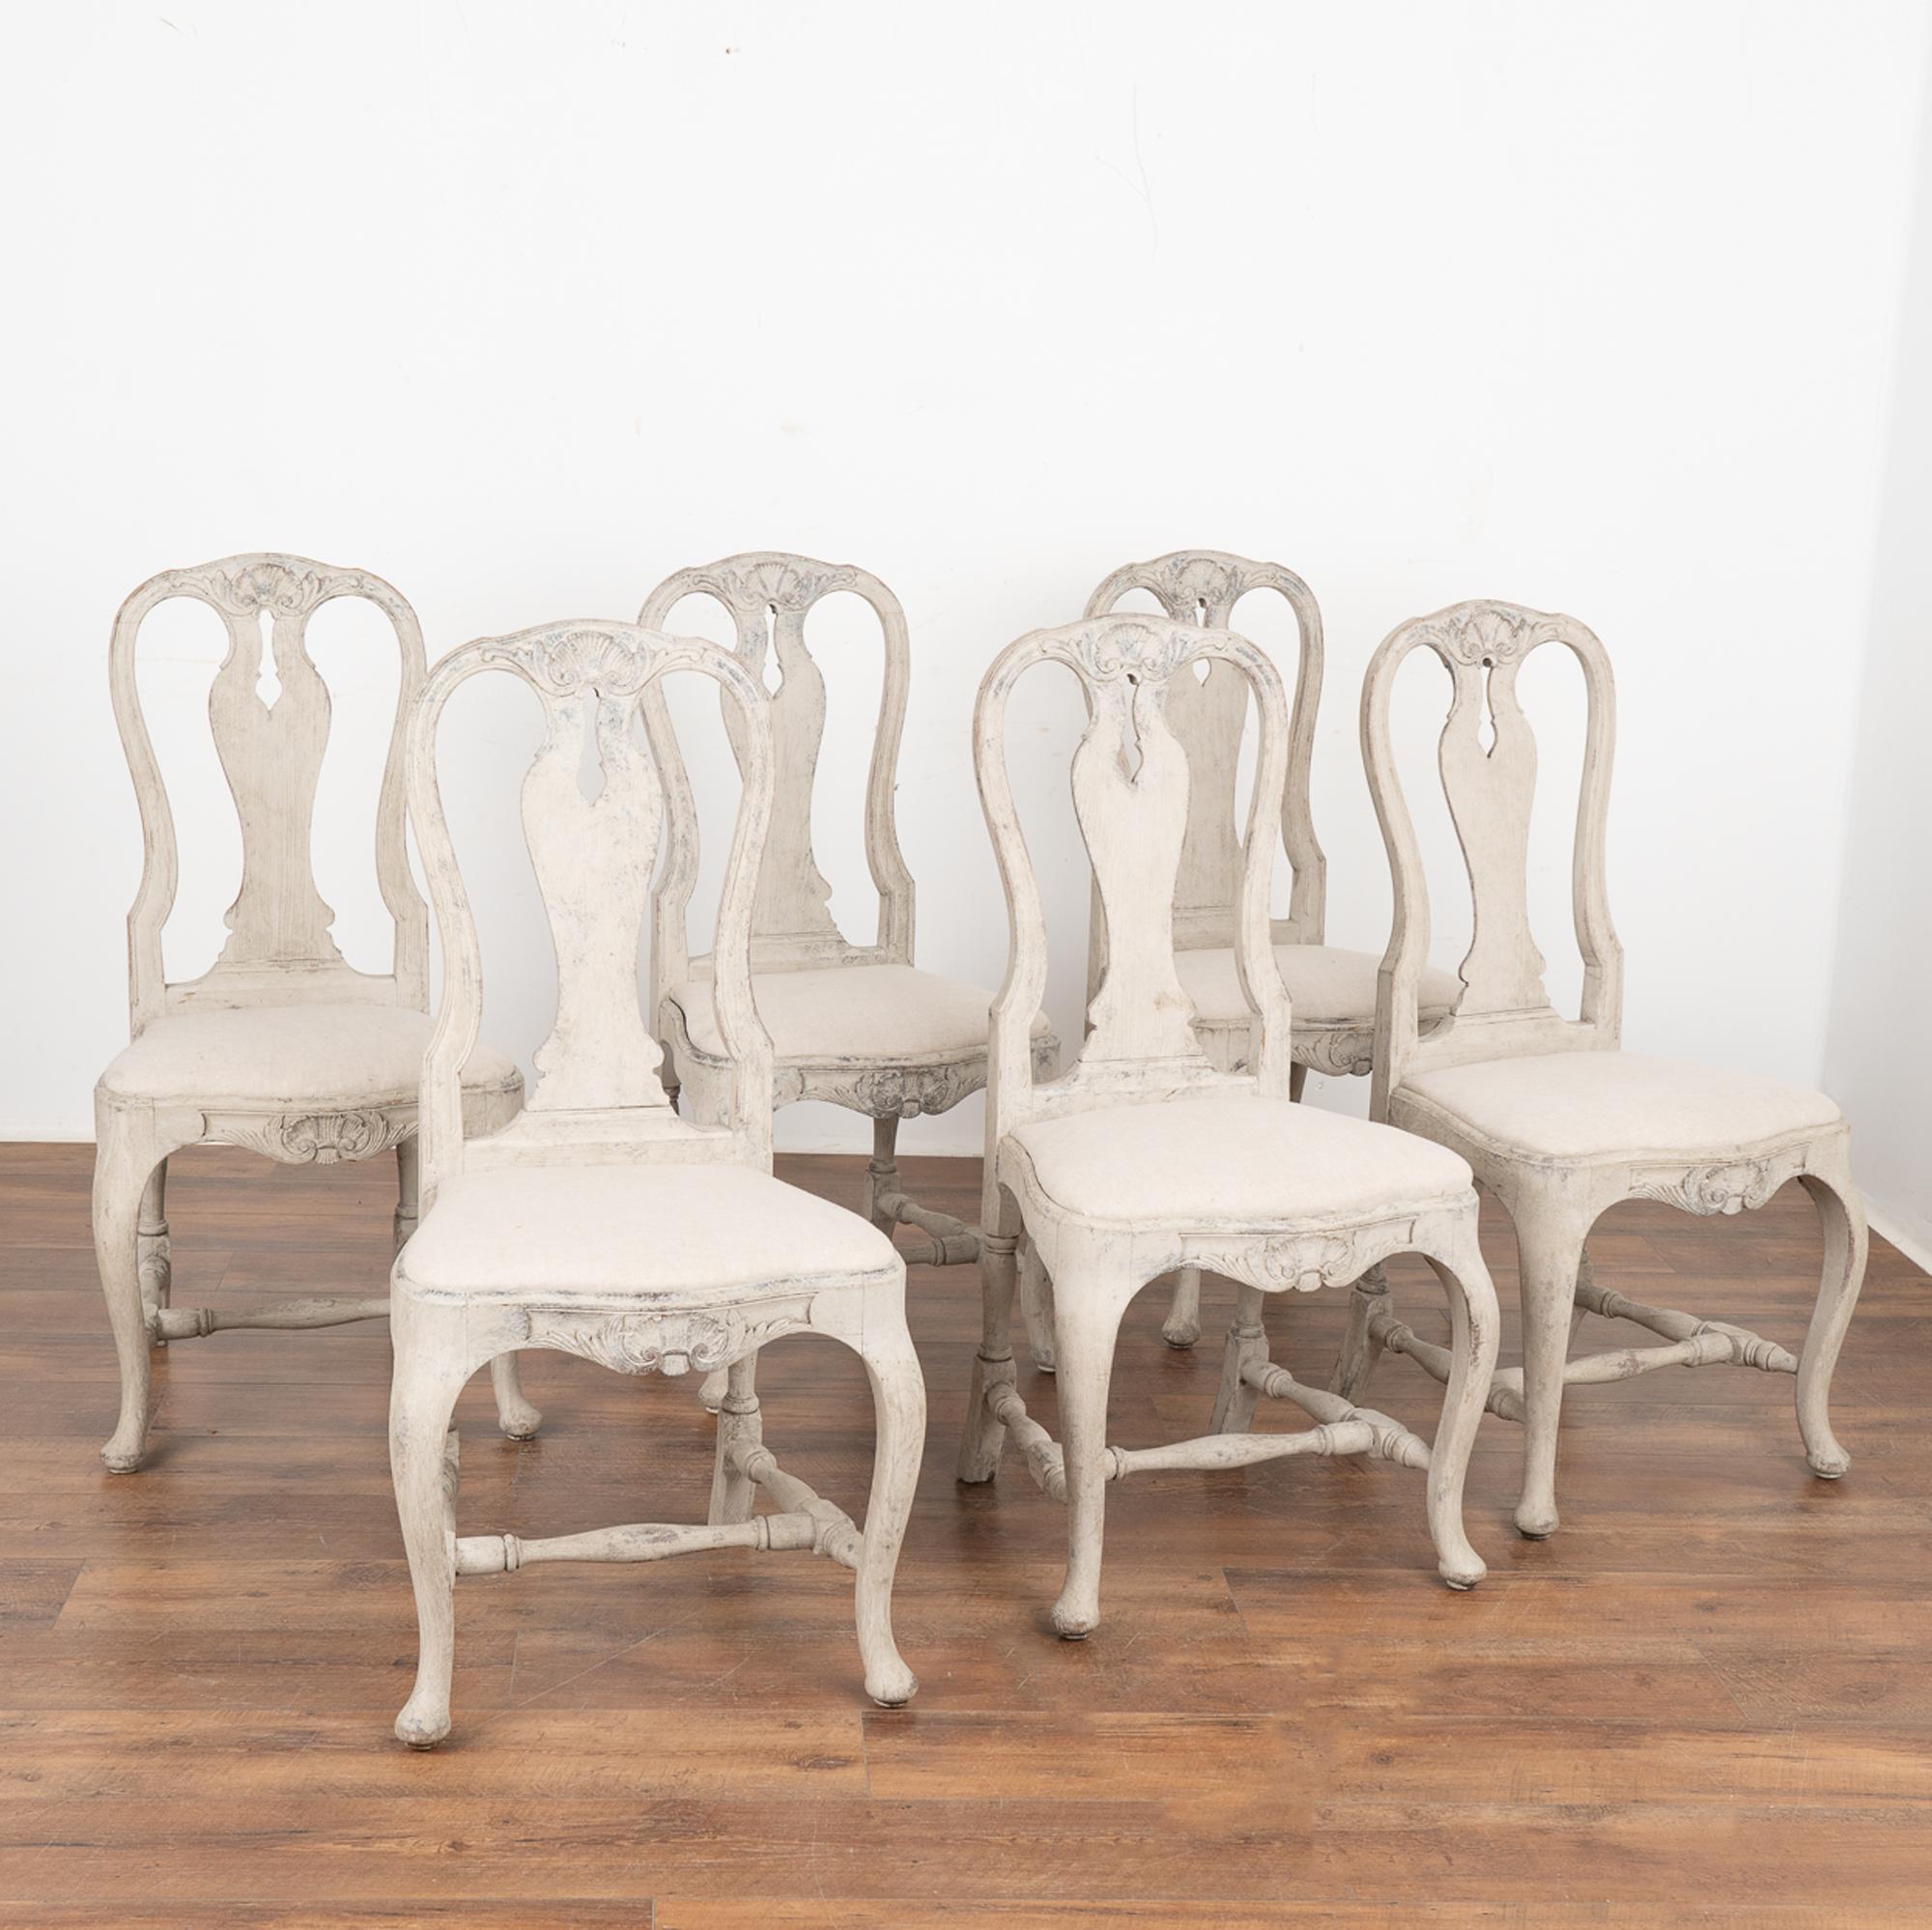 Ensemble de 6 belles chaises de salle à manger rococo suédoises avec des pieds cabriolets courbés et des accents sculptés. 
La nouvelle finition peinte en couches grises appliquée par des professionnels a été légèrement frottée et parfaitement